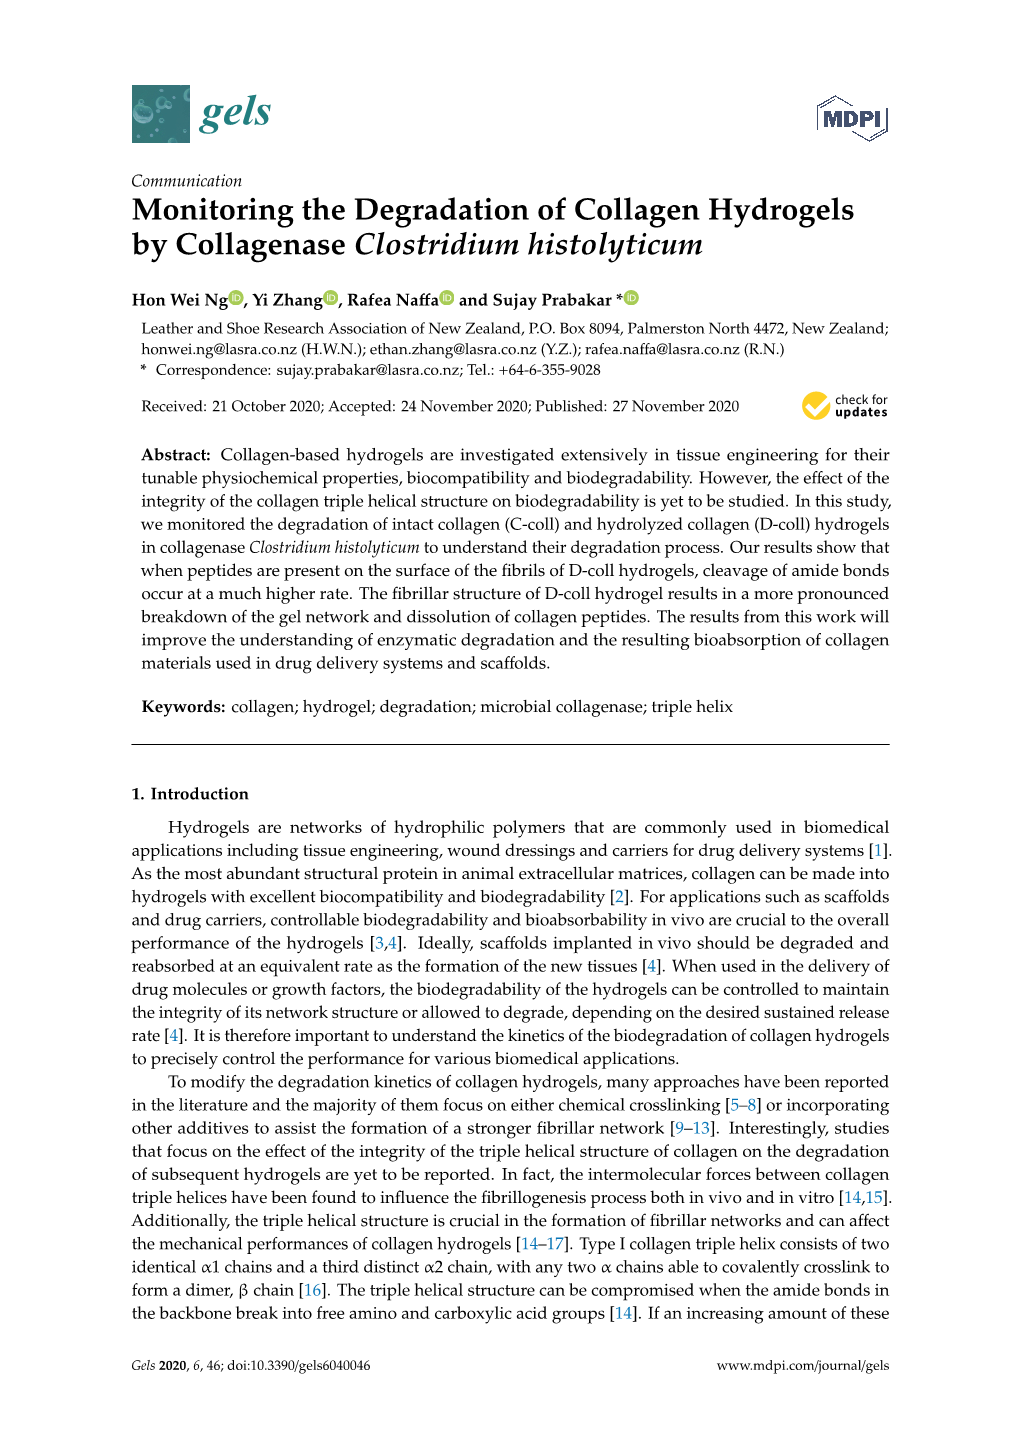 Monitoring the Degradation of Collagen Hydrogels by Collagenase Clostridium Histolyticum